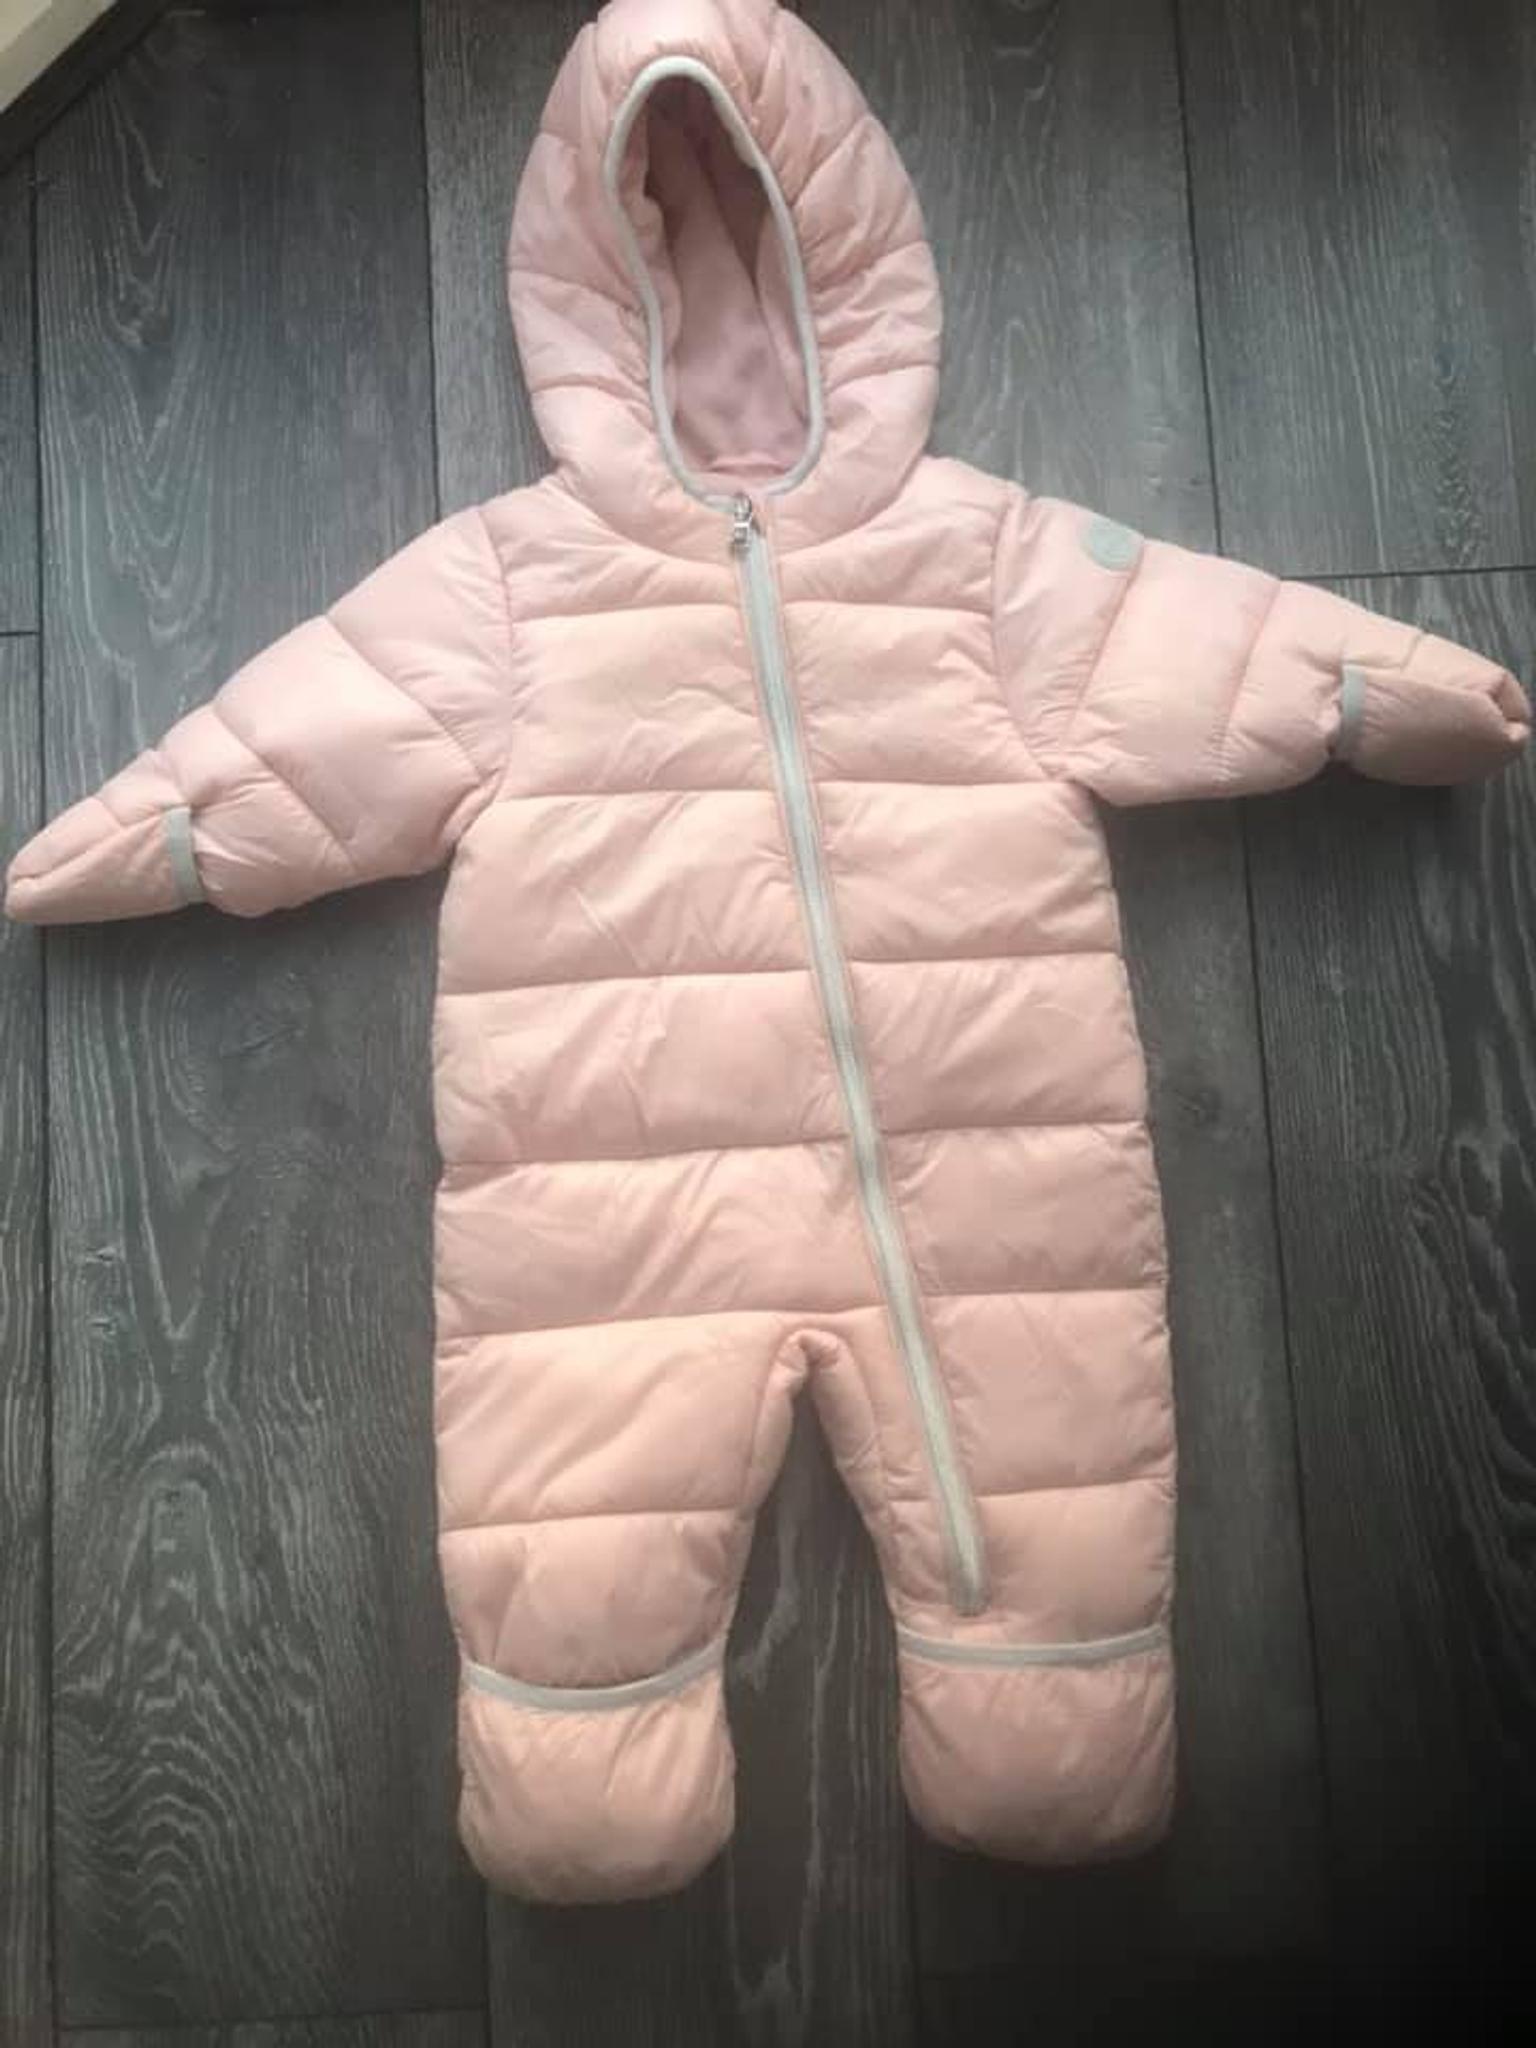 michael kors baby girl jacket